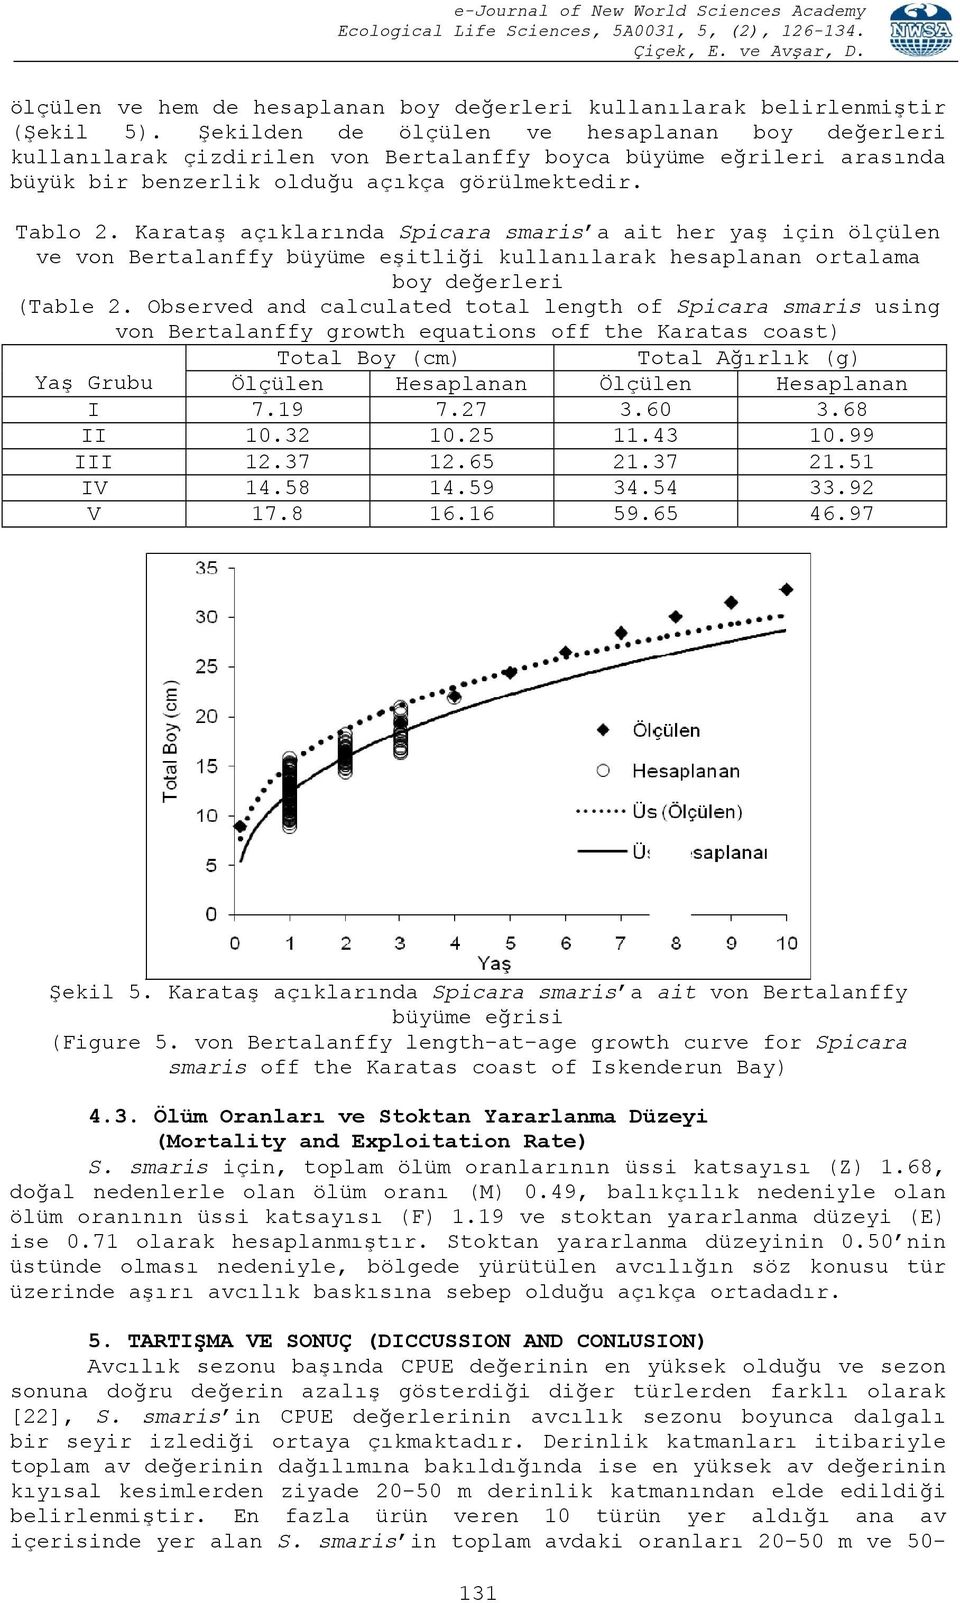 Karataş açıklarında Spicara smaris a ait her yaş için ölçülen ve von Bertalanffy büyüme eşitliği kullanılarak hesaplanan ortalama boy değerleri (Table 2.